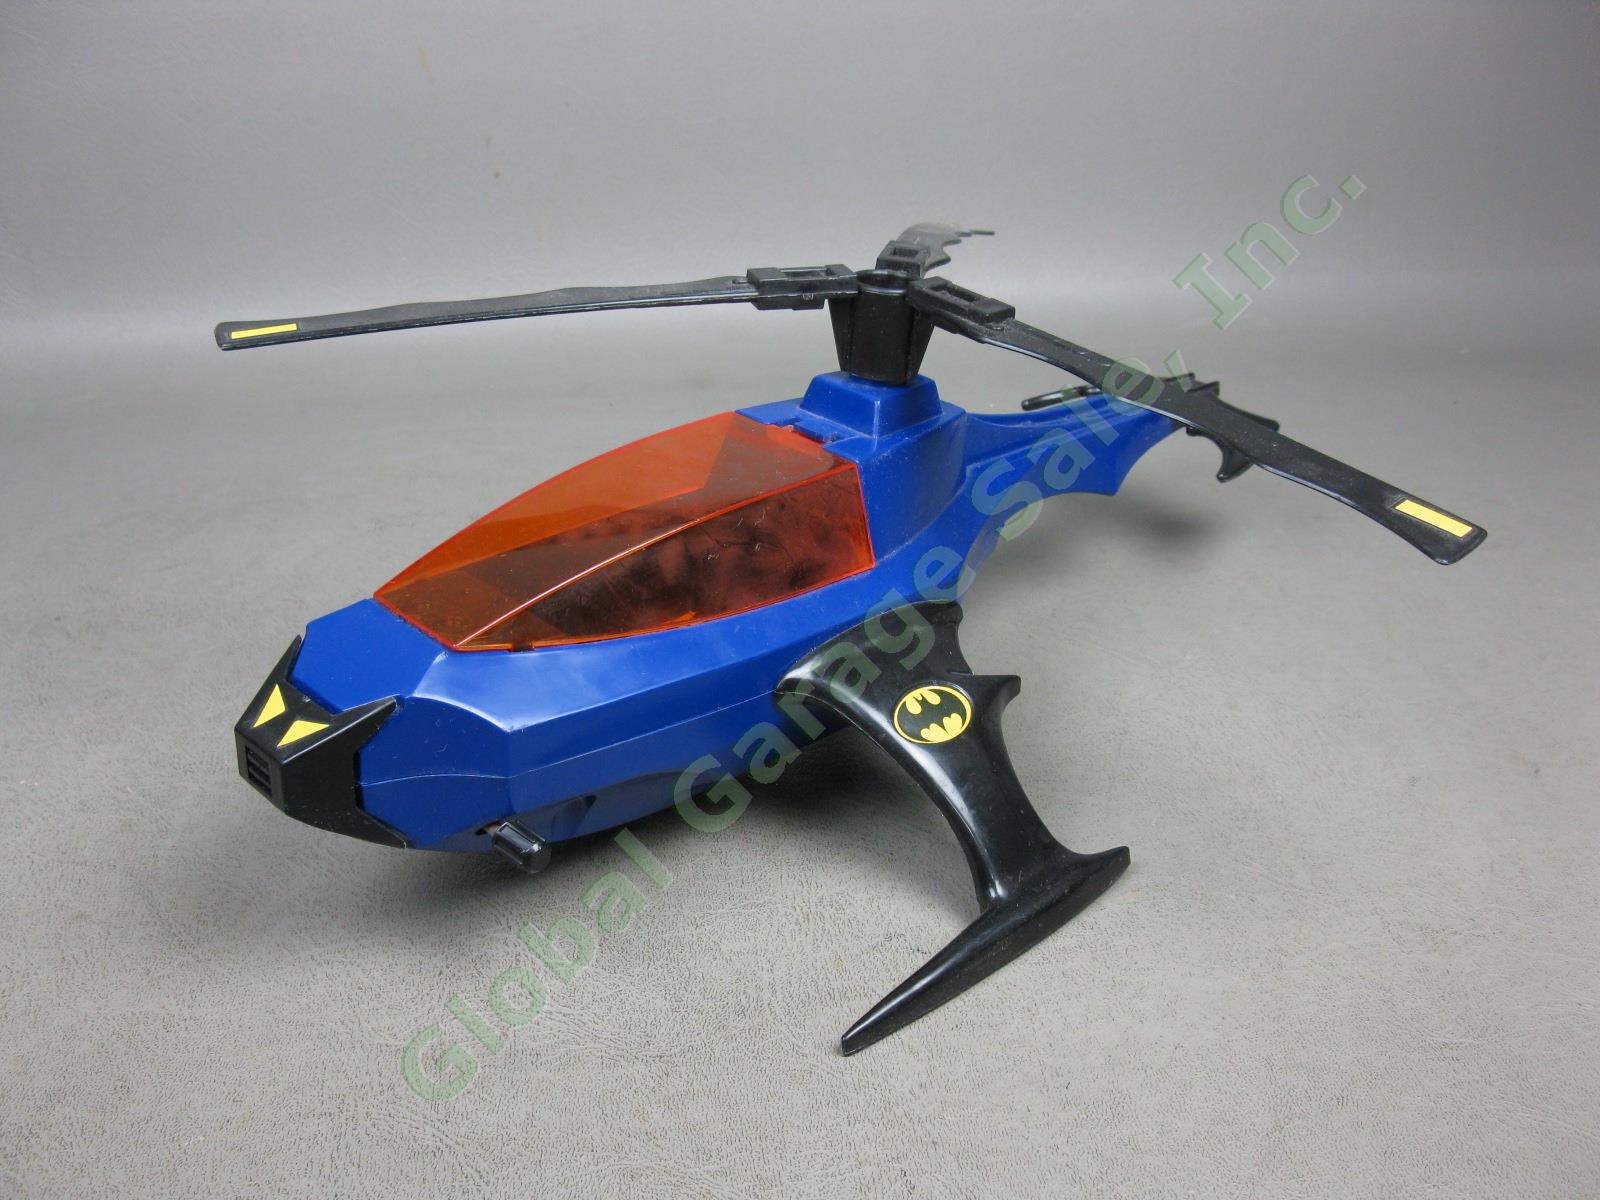 1986 Kenner Super Powers DC Comics Batman Batcopter Air-Pursuit Chopper Vehicle